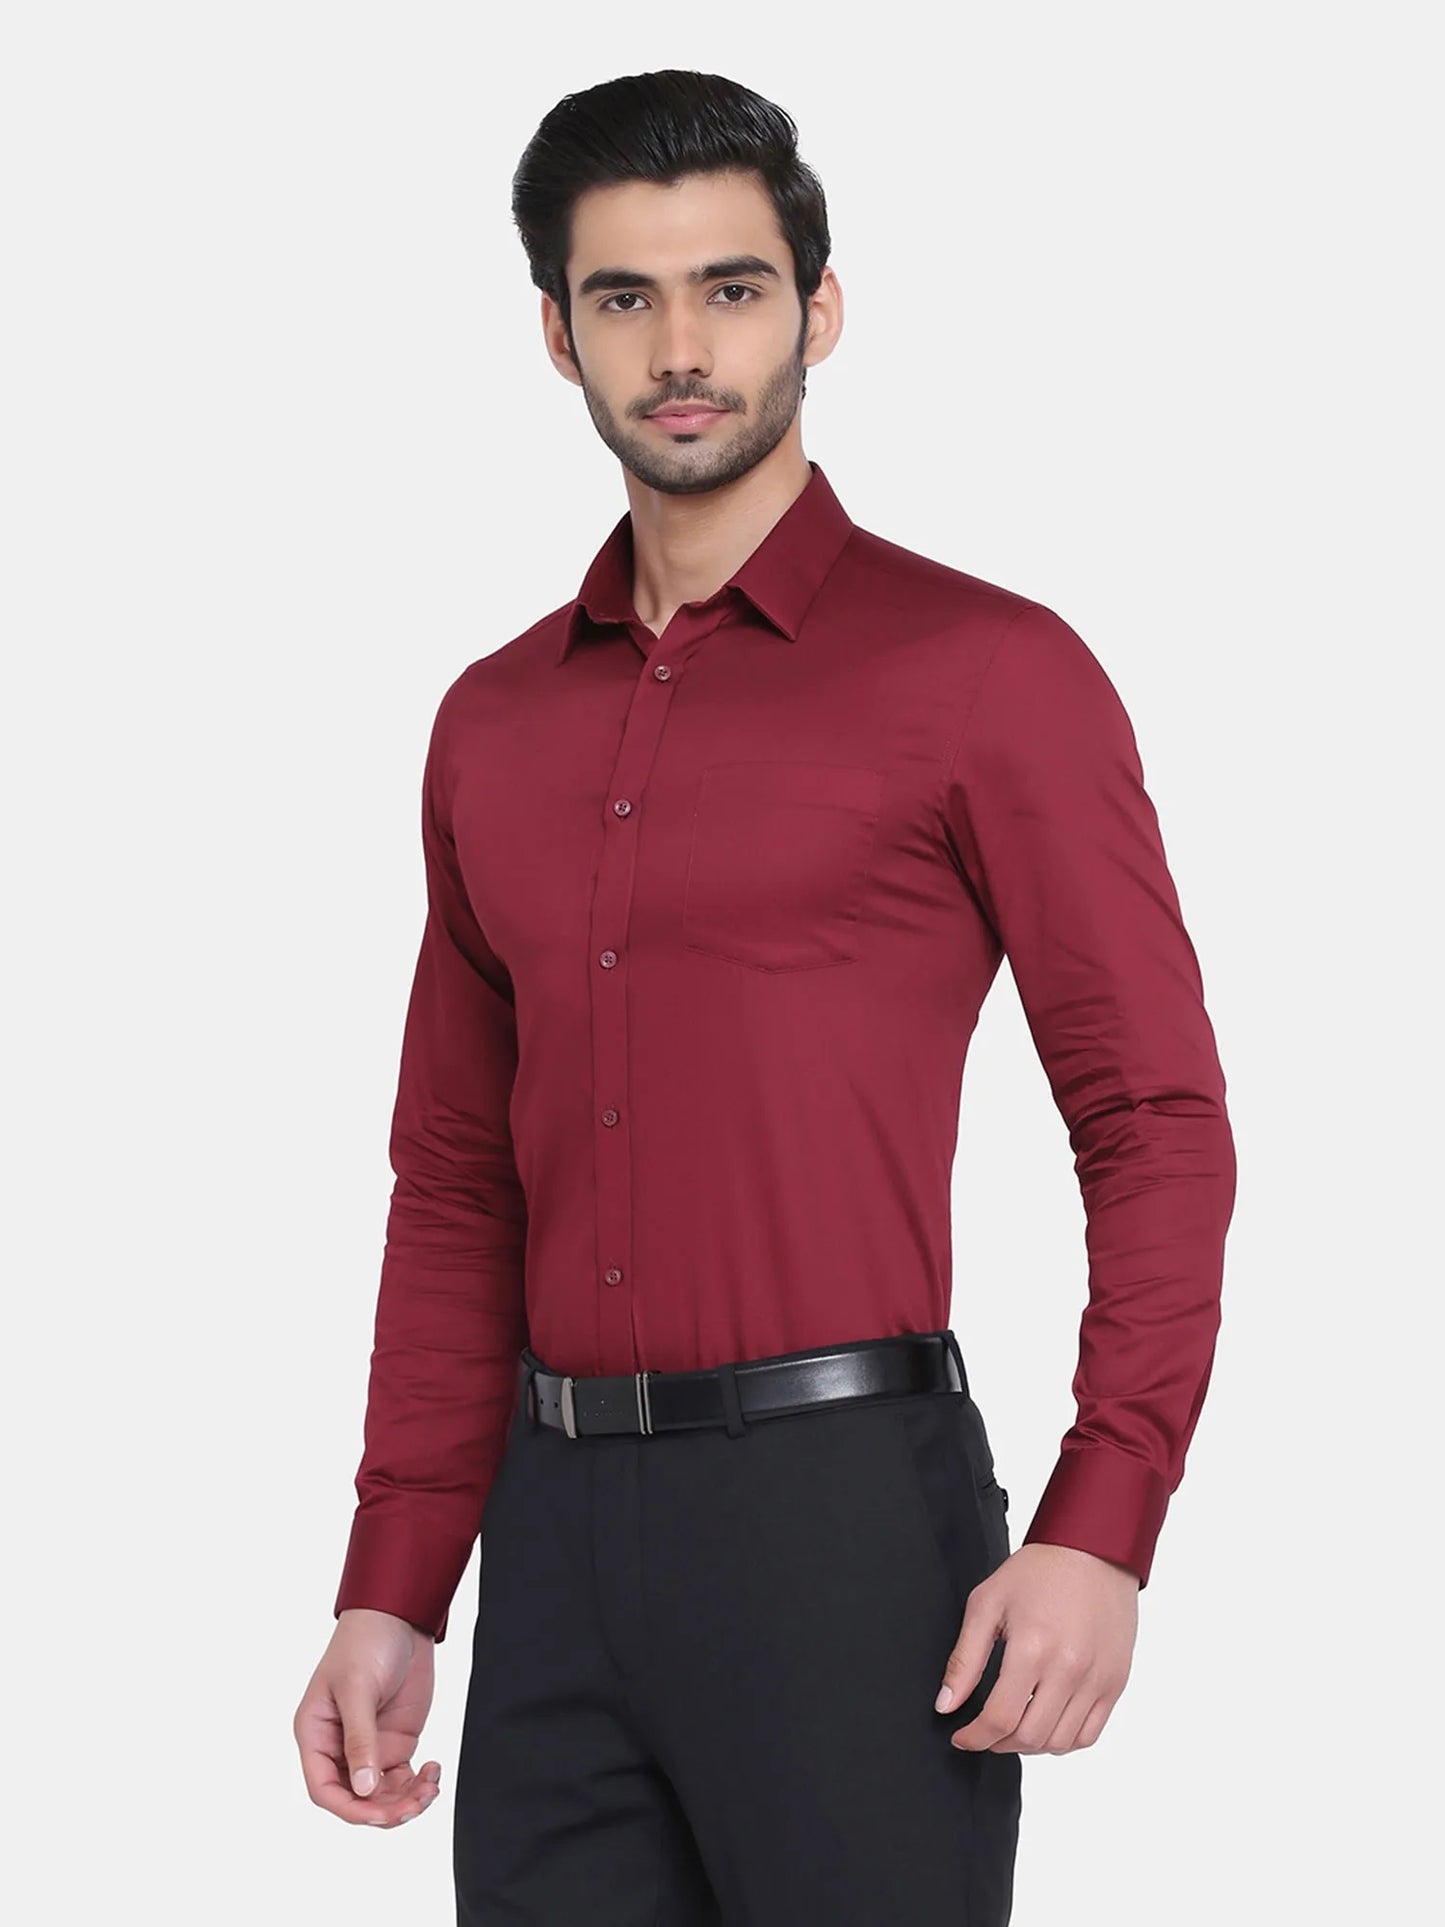 OLMA Men Regular Fit Solid Spread Collar Formal Shirt (Full Sleeve, Maroon)